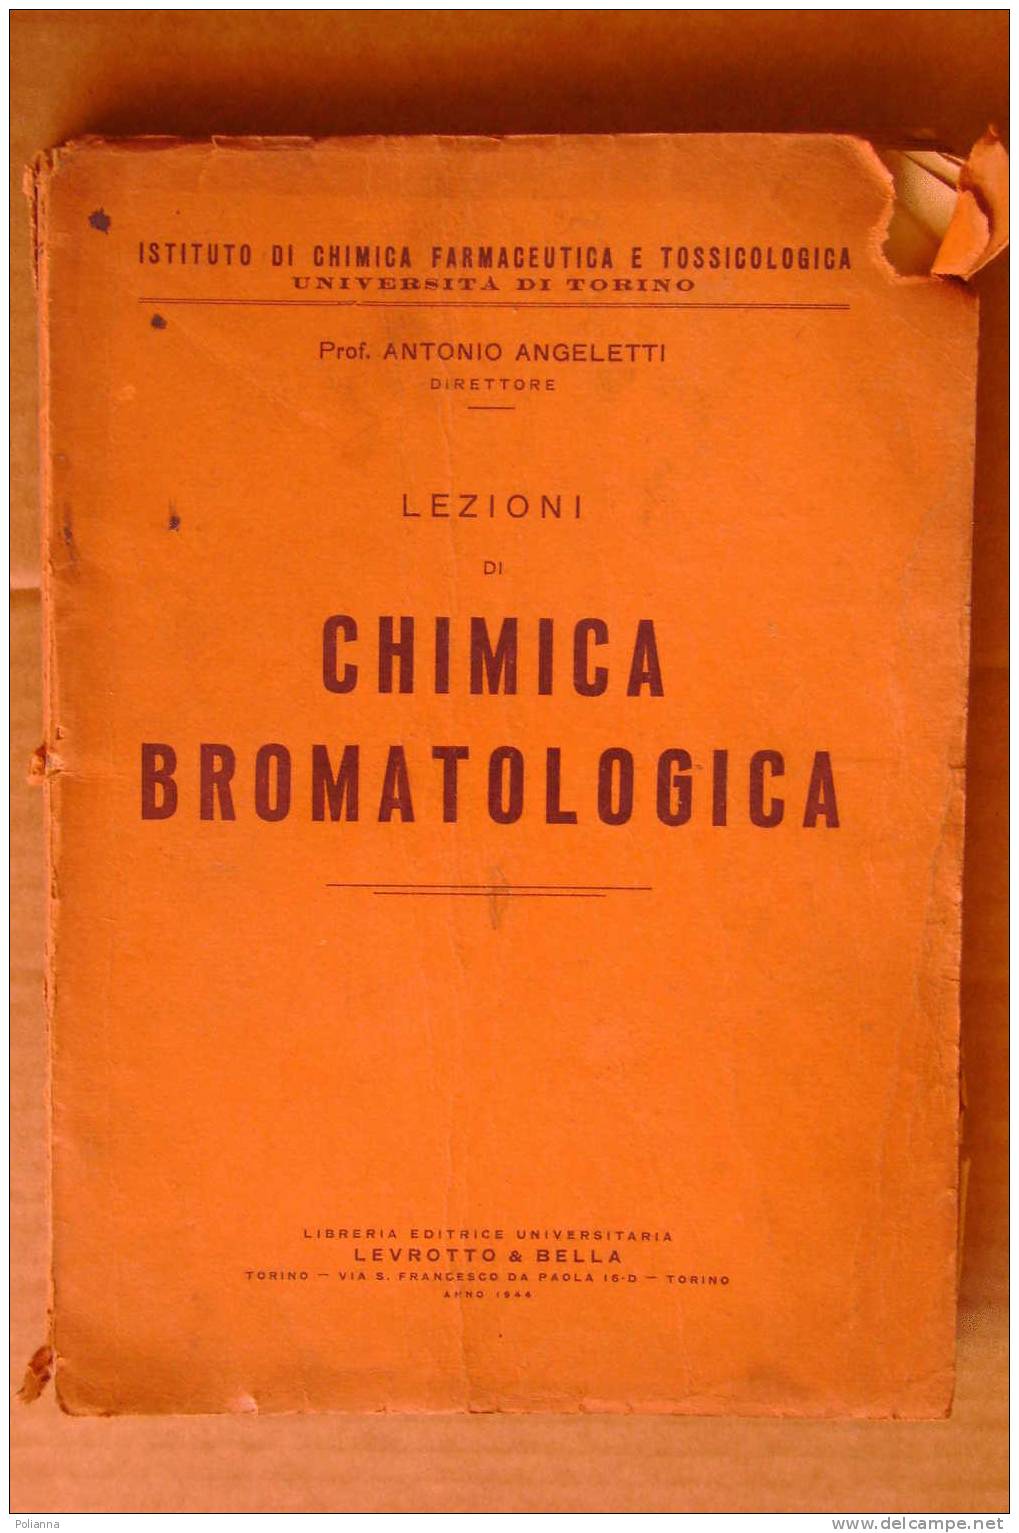 PDK/13 Farmaceutica E Tossicologica : A.Angeletti LEZIONI Di CHIMICA BROMATOLOGICA Levrotto & Bella 1944 - Medecine, Biology, Chemistry